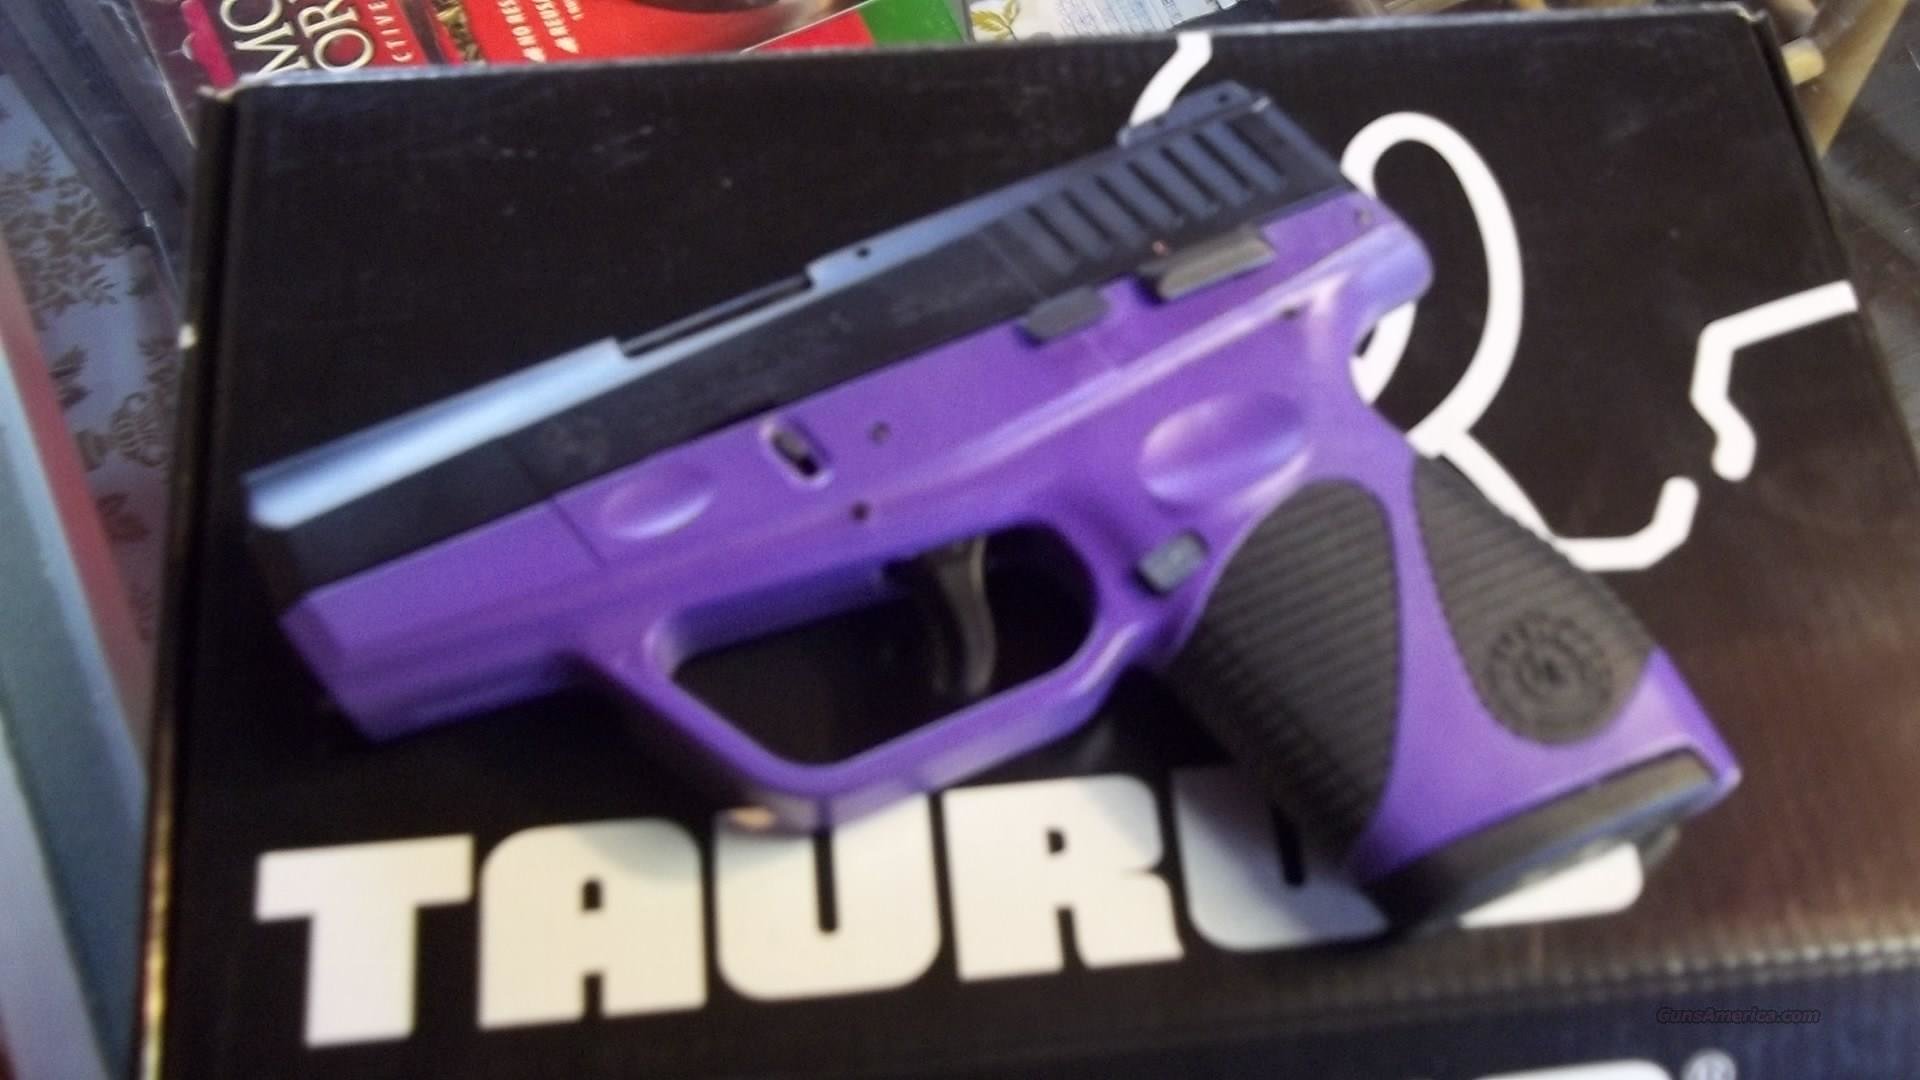 Taurus PT 709 9mm Slim Purple for sale